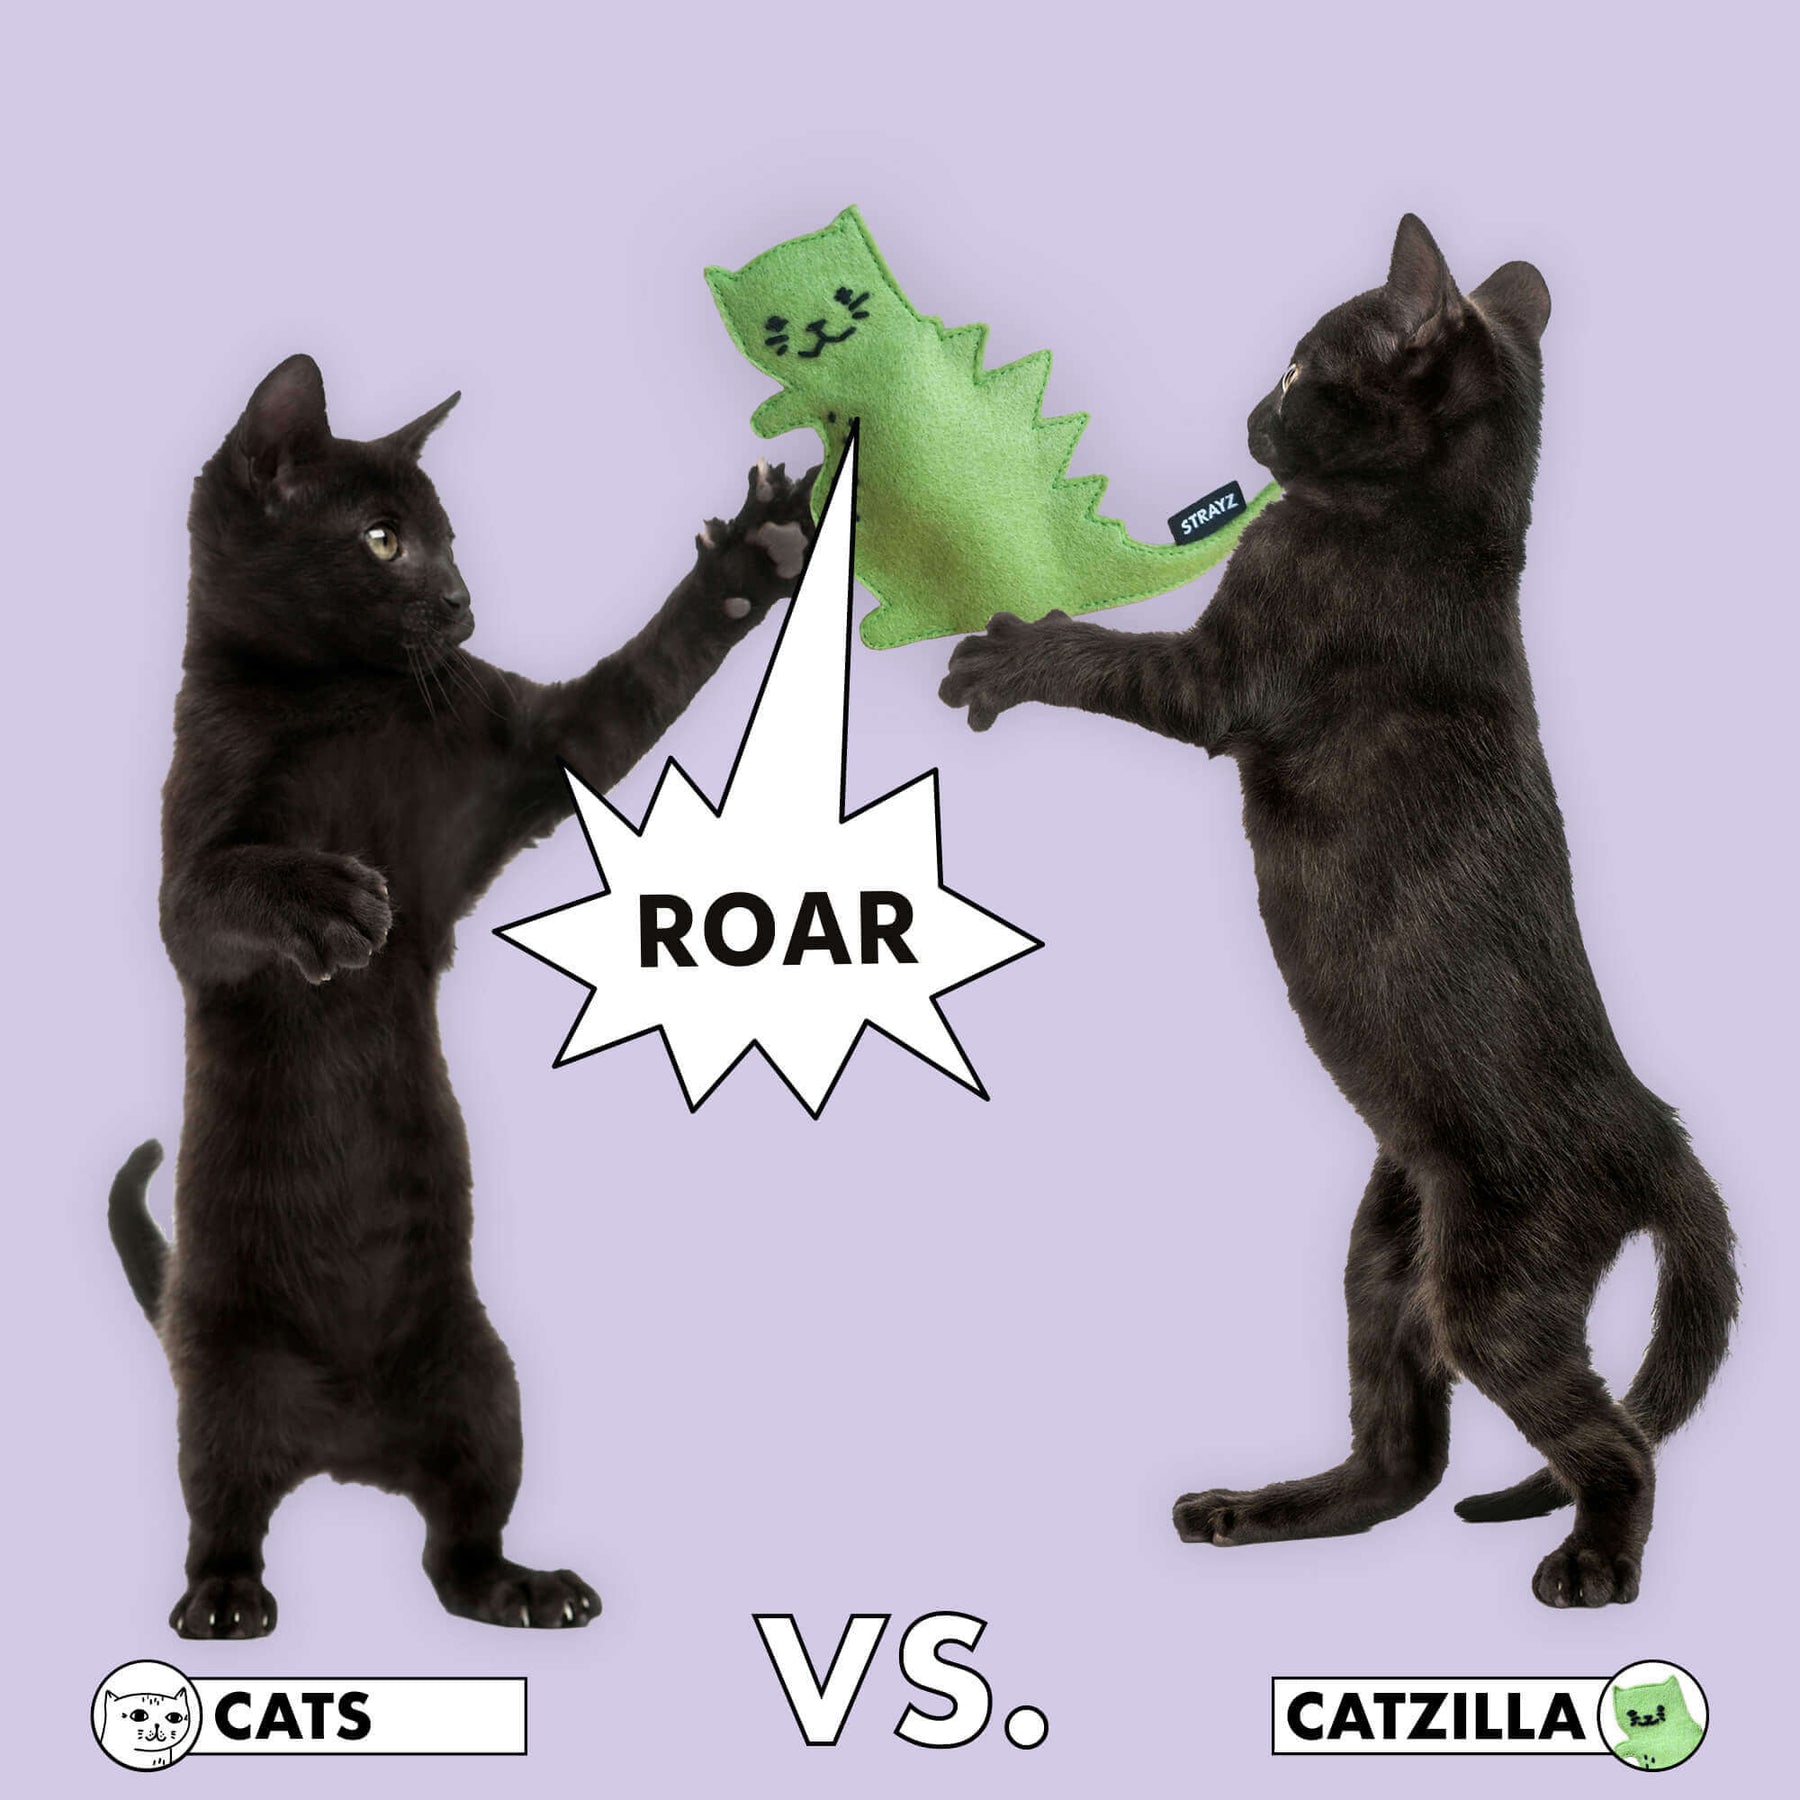 CATZILLA ist das beliebte Spielzeug für Katzen von STRAYZ. Befüllbares Baldriankissen für Katzen